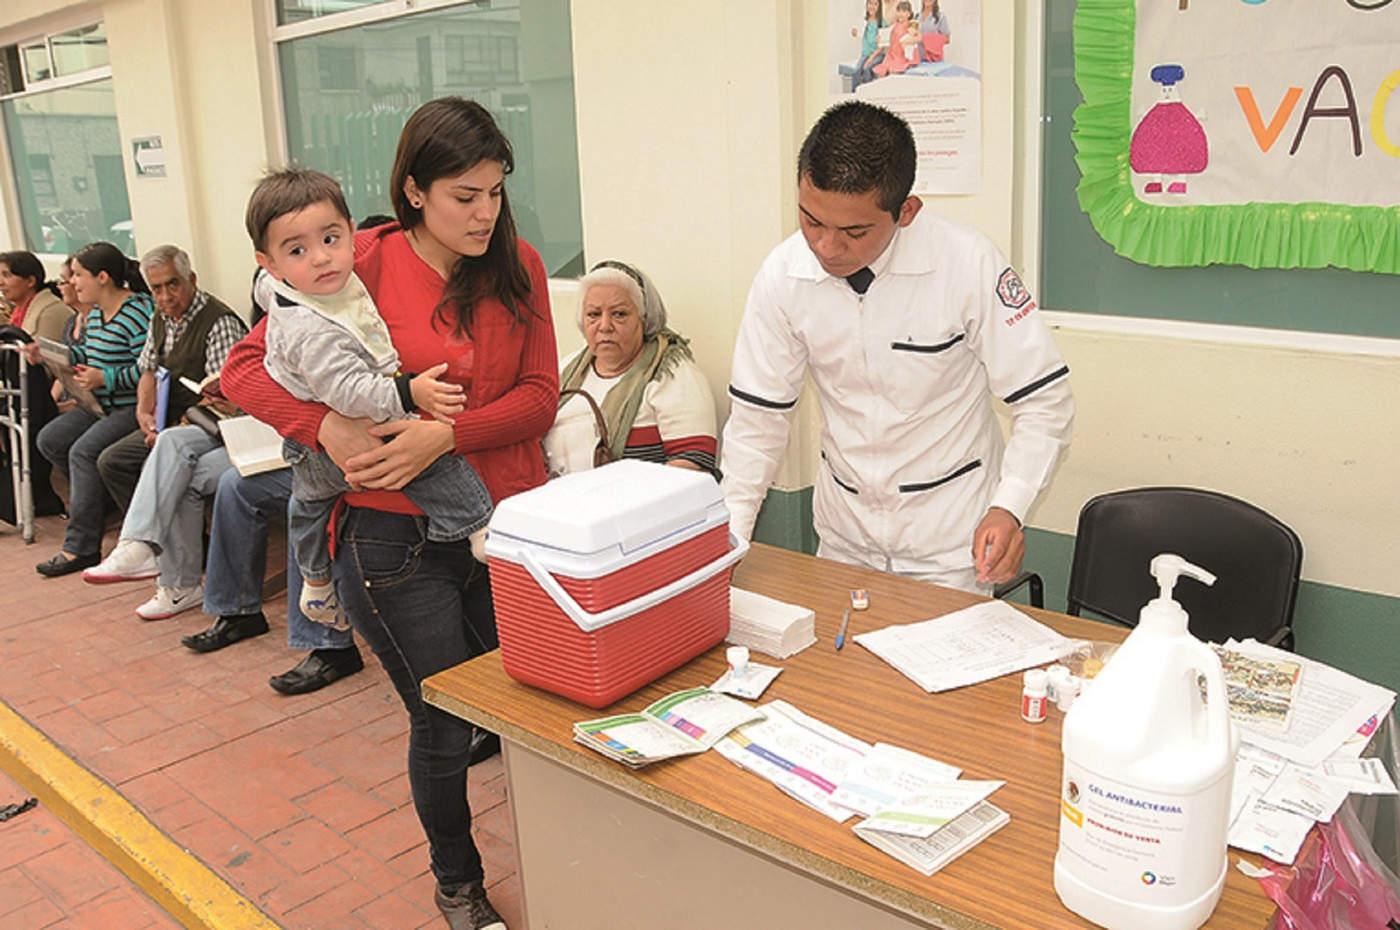 Aplican en Nuevo León un millón de vacunas contra la influenza. Noticias en tiempo real